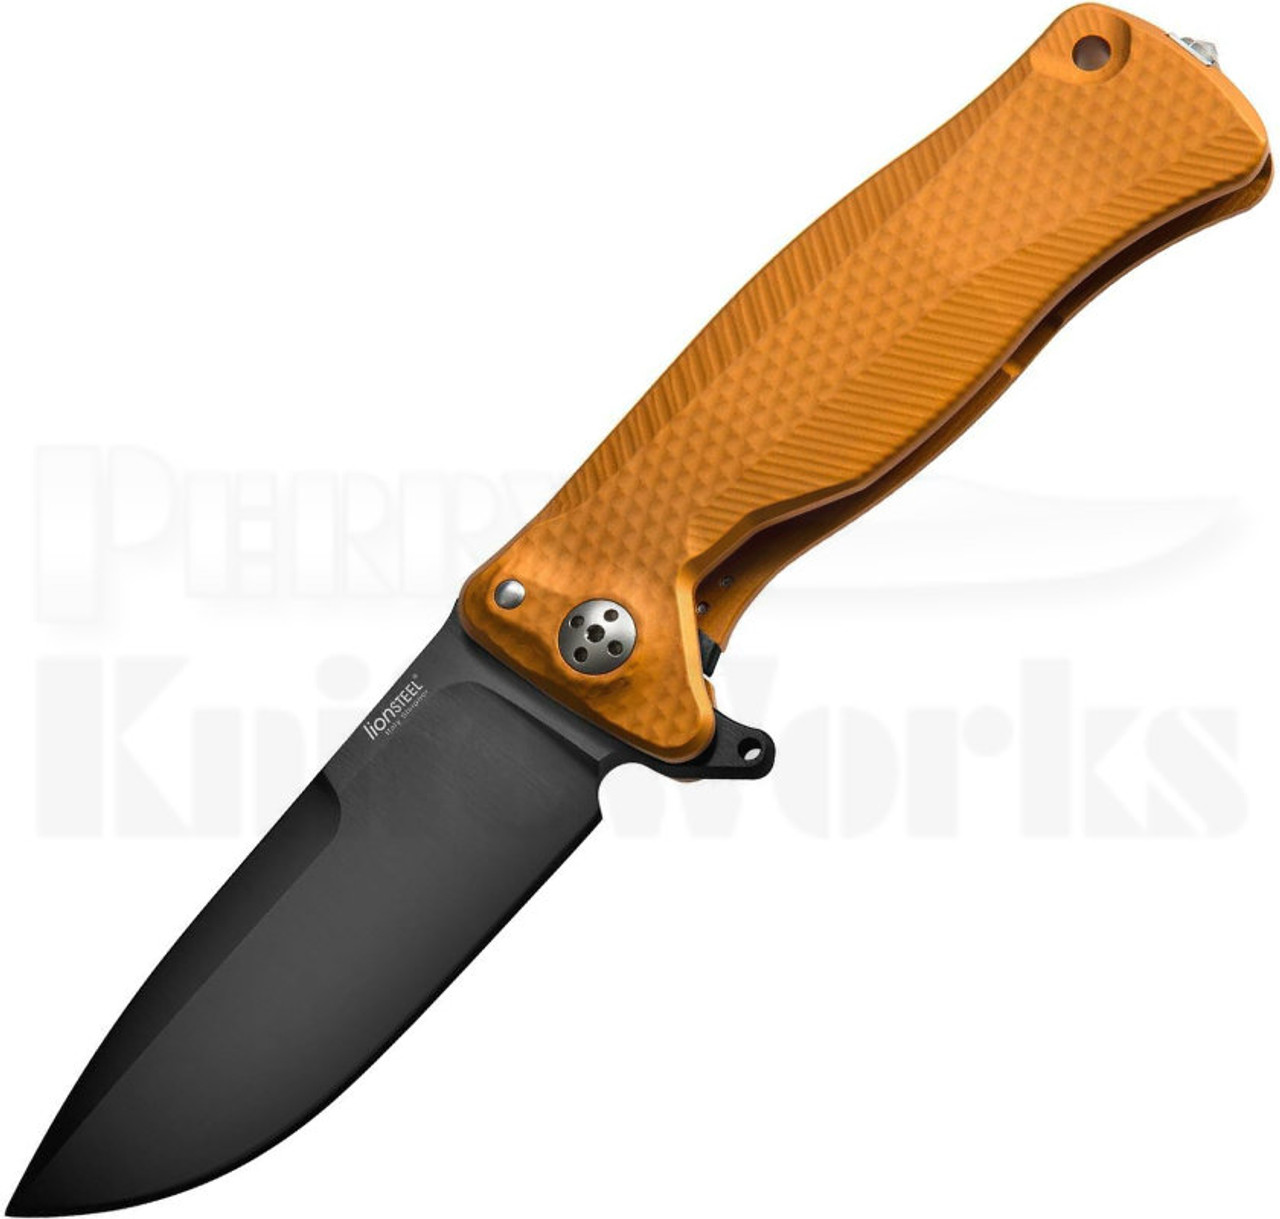 Lion Steel SR-11 Framelock Knife Orange (3.7" Black) SR11A-OB